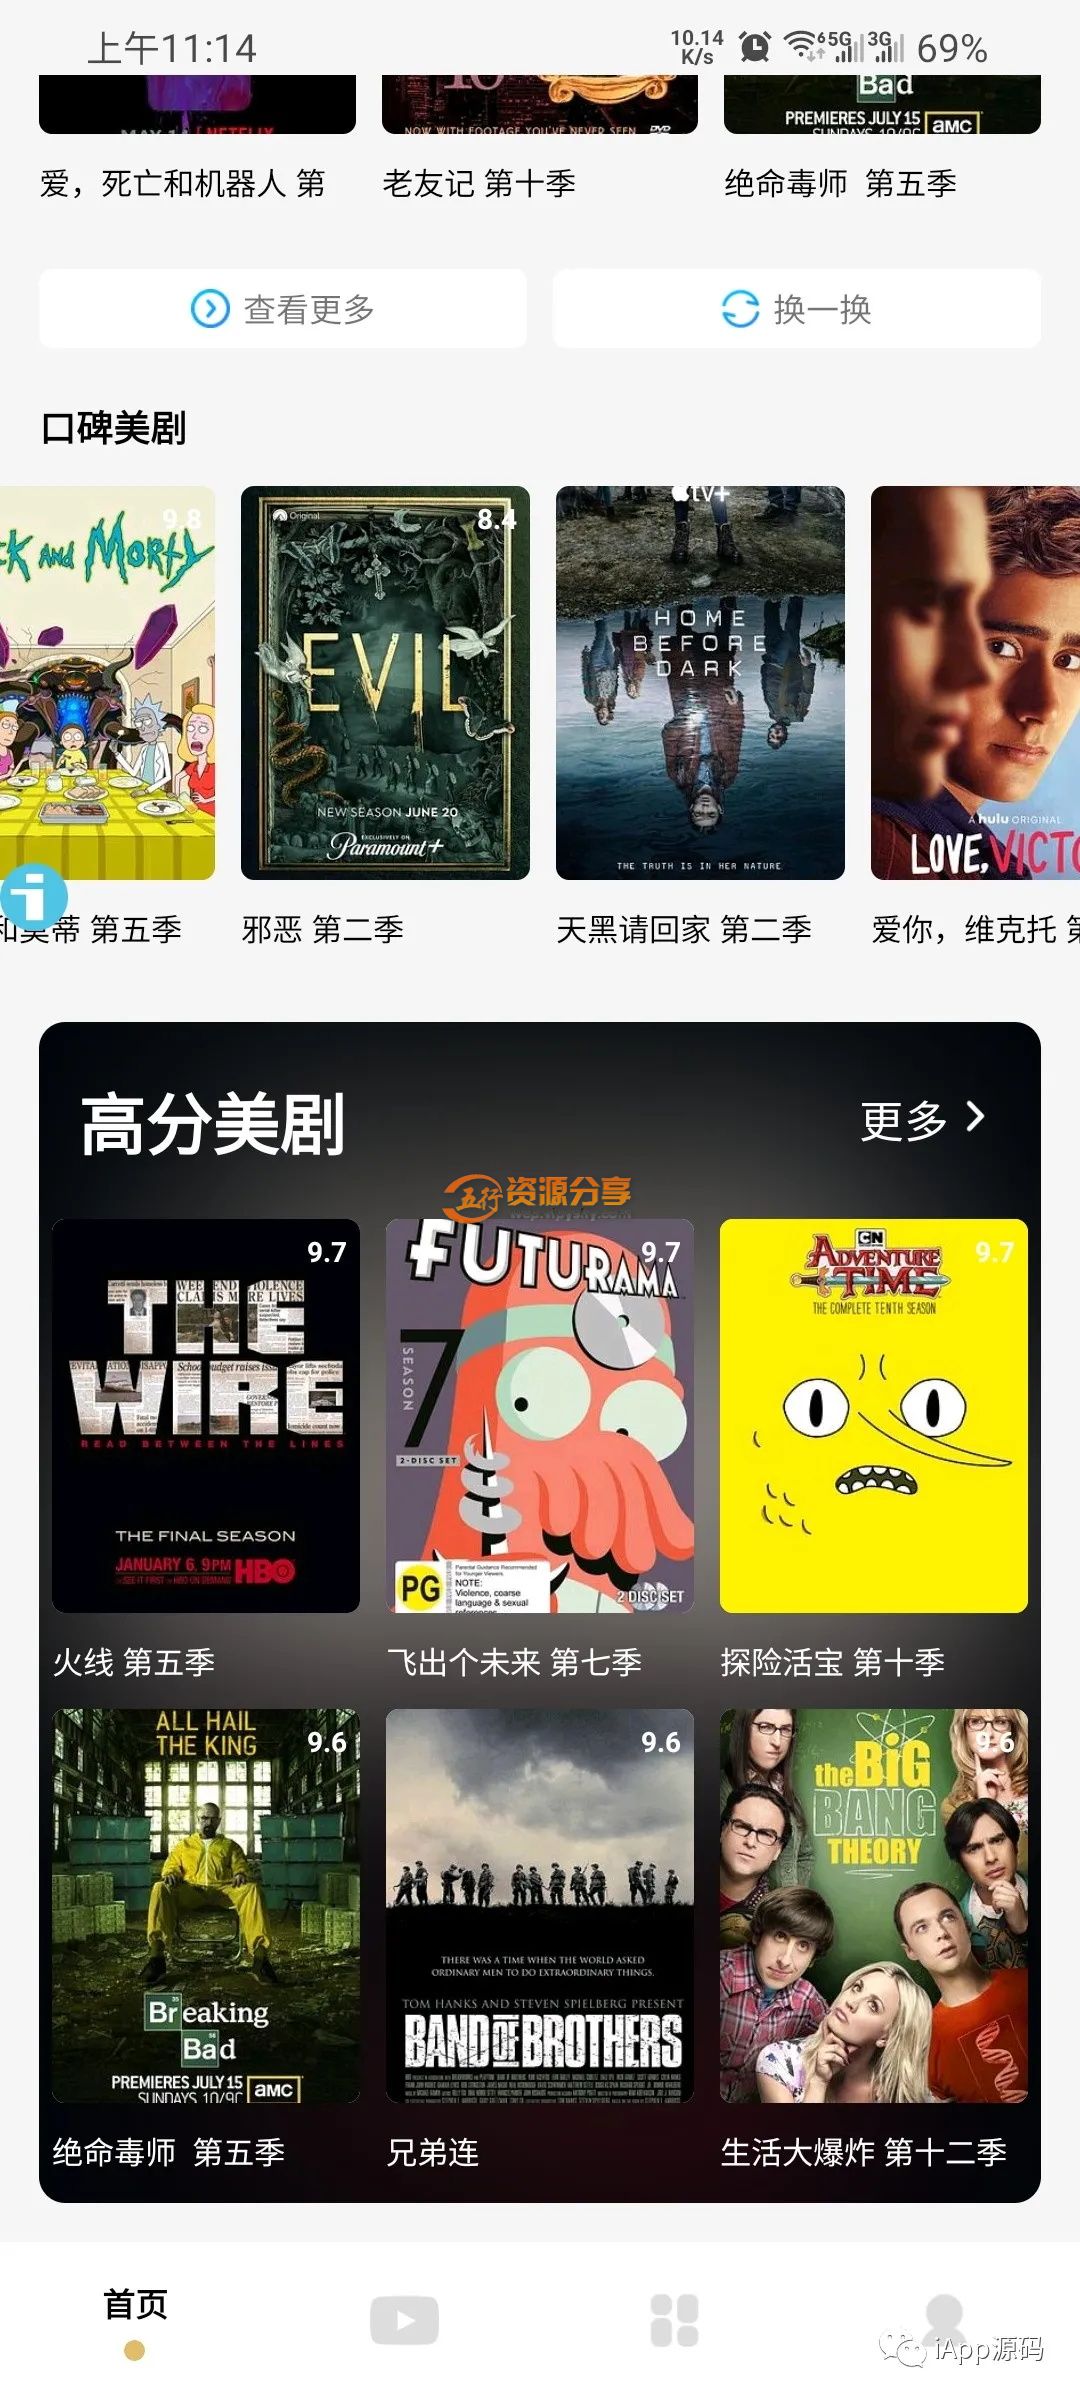 iApp村夫-影院追剧-v5源码，支持豆瓣电影、自动背景ui、横向电影列表